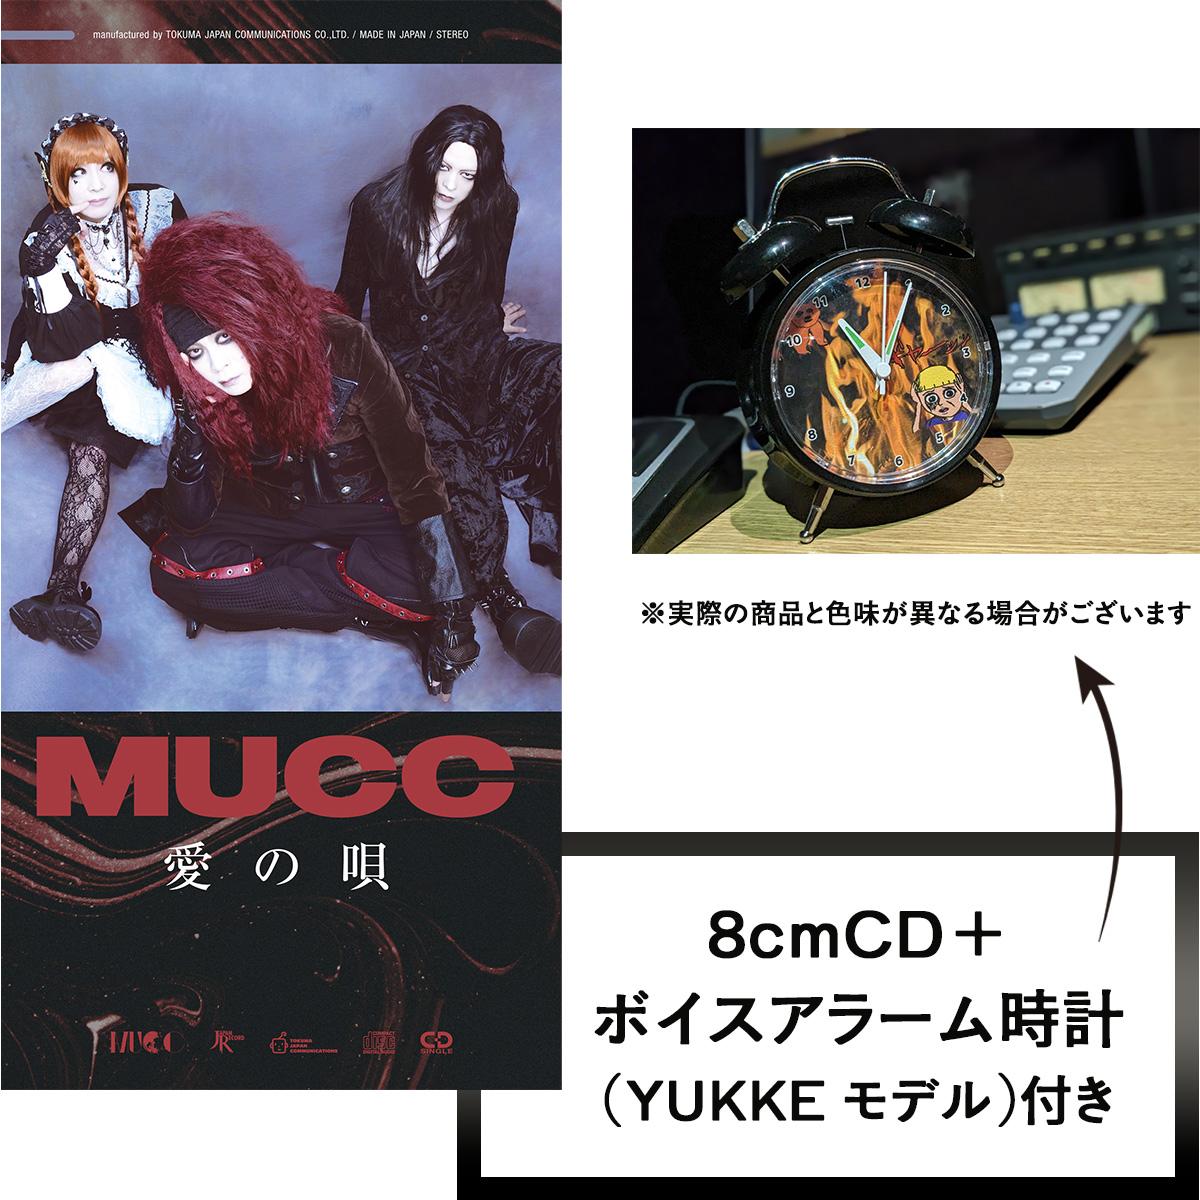 愛の唄 | YUKKEモデルボイスアラーム時計付 | クラウン徳間ショップ限定盤 | CD(シングル) | MUCC | クラウン徳間ショップ